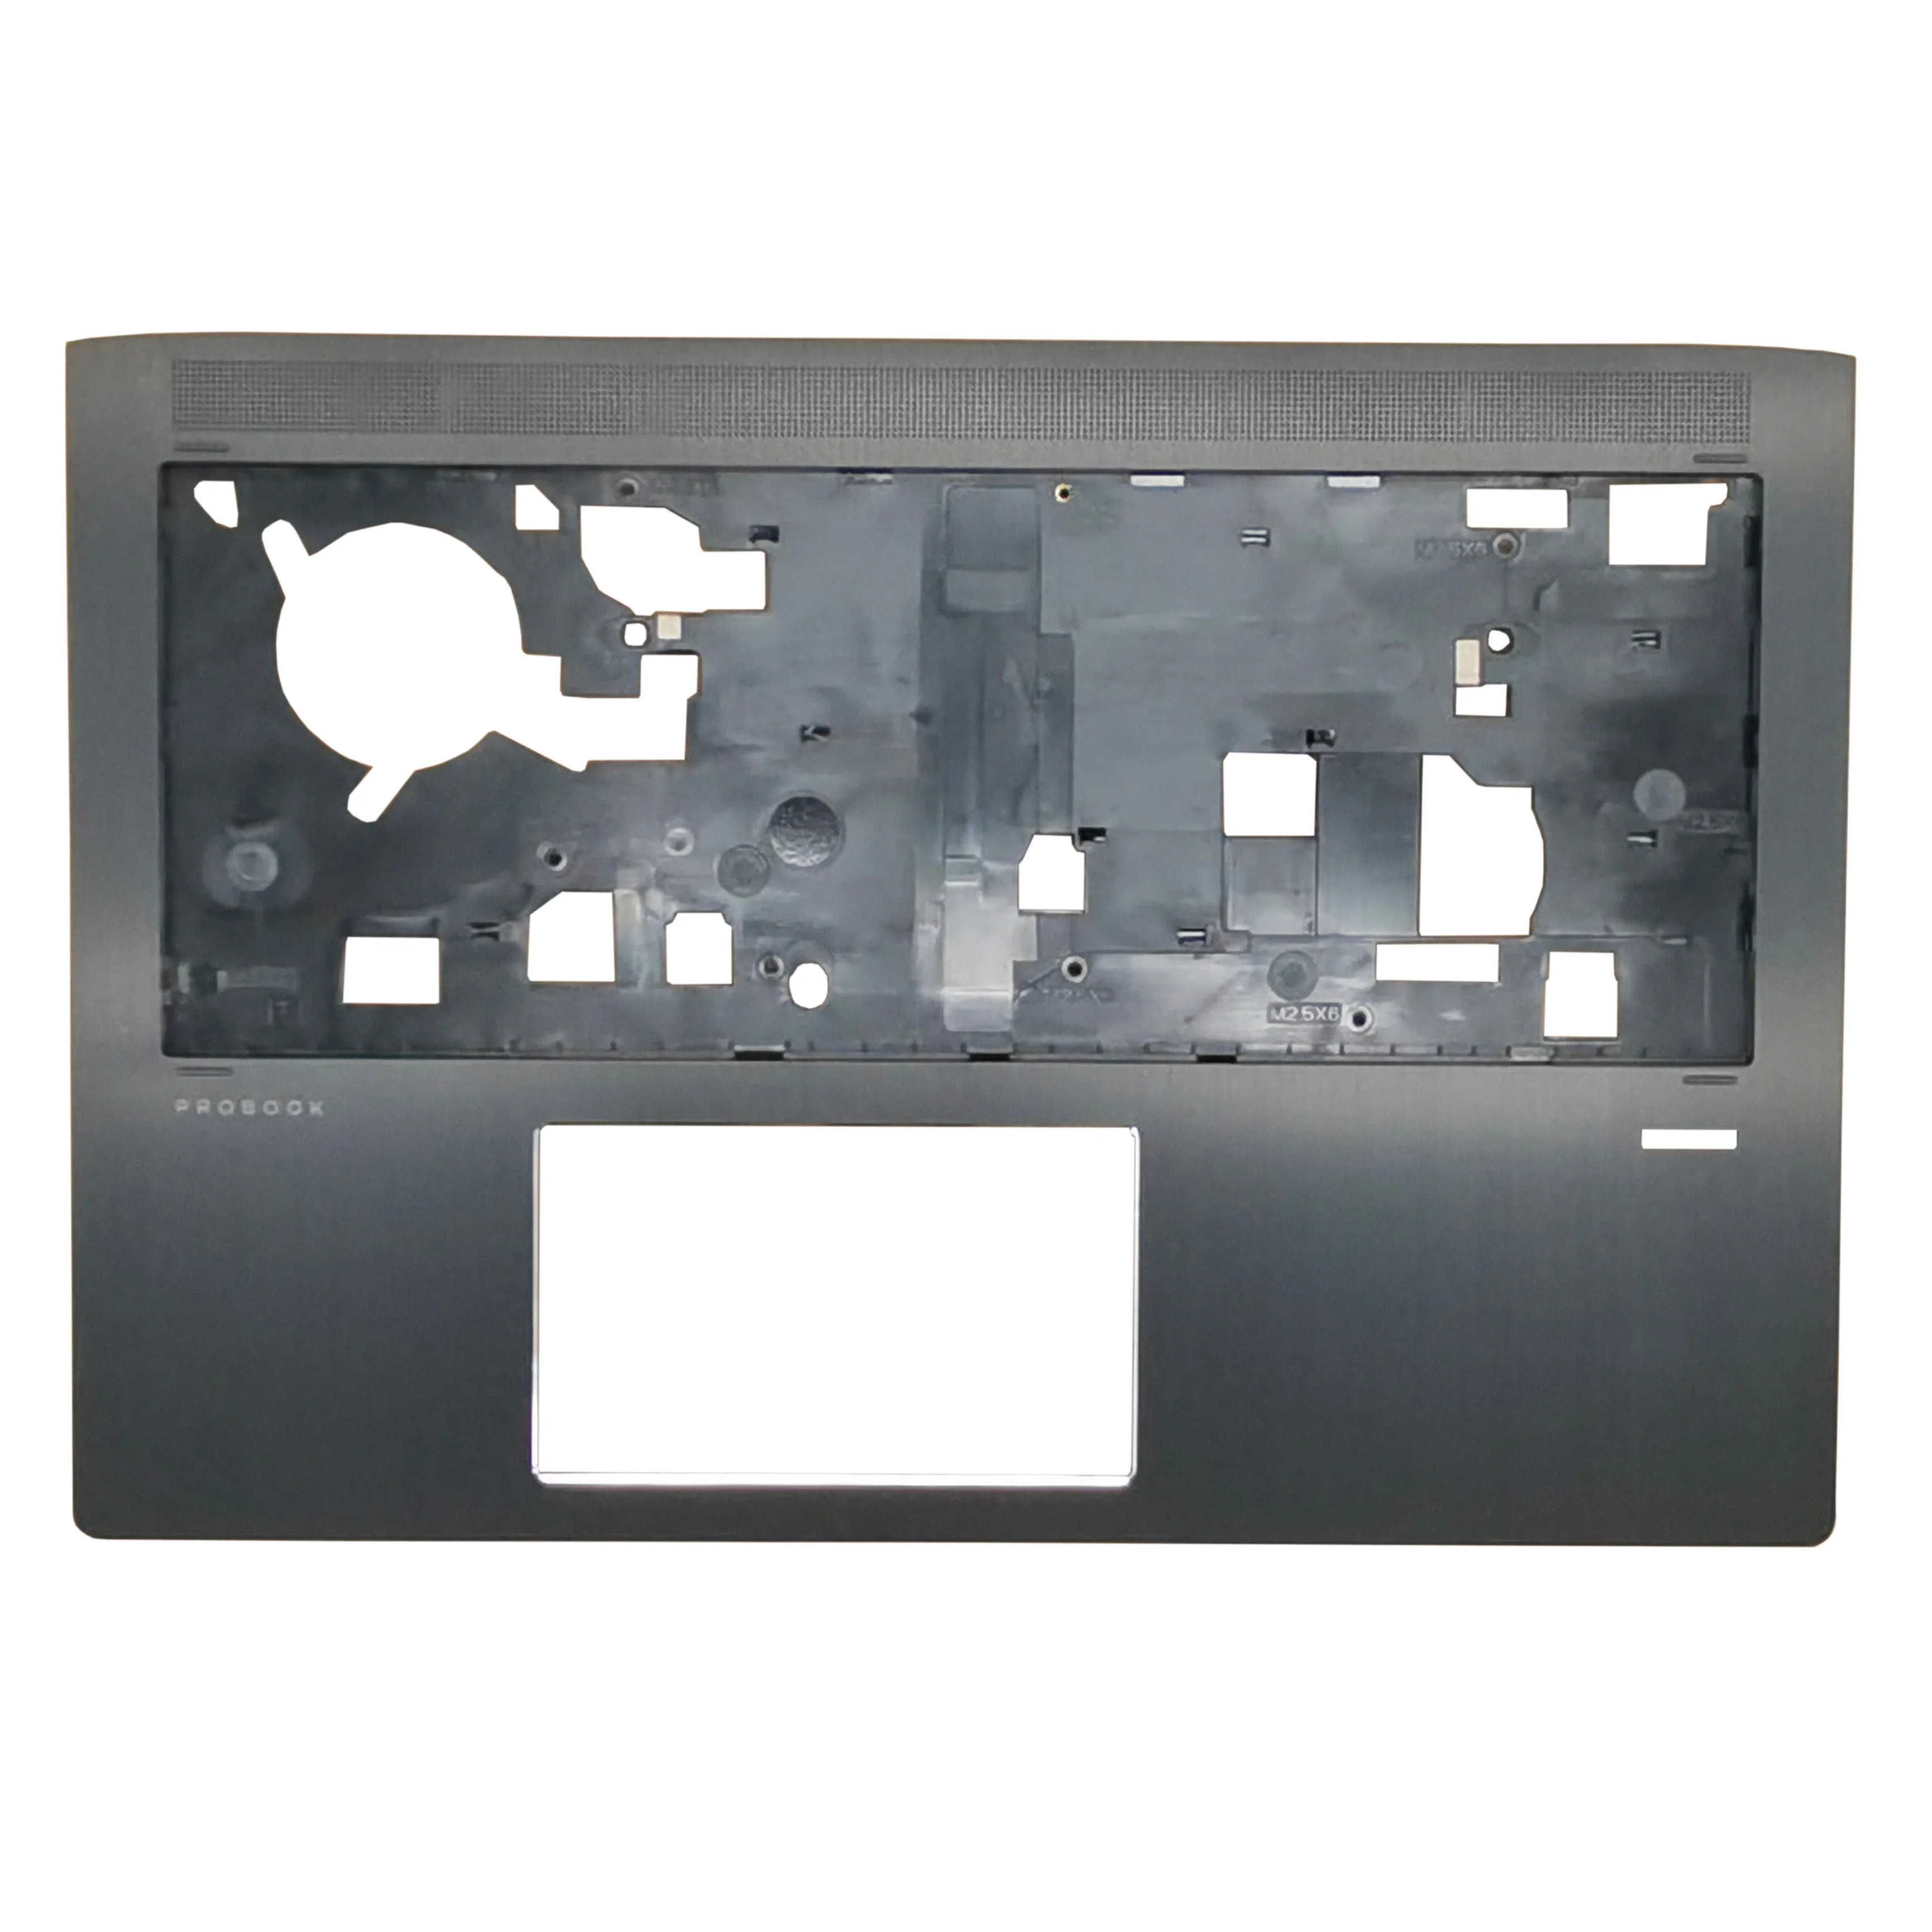 

Оригинальный Новый чехол для ноутбука HP Probook X360 440 G1, Упор для рук, верхний чехол, корпус C, корпус, черная фотография